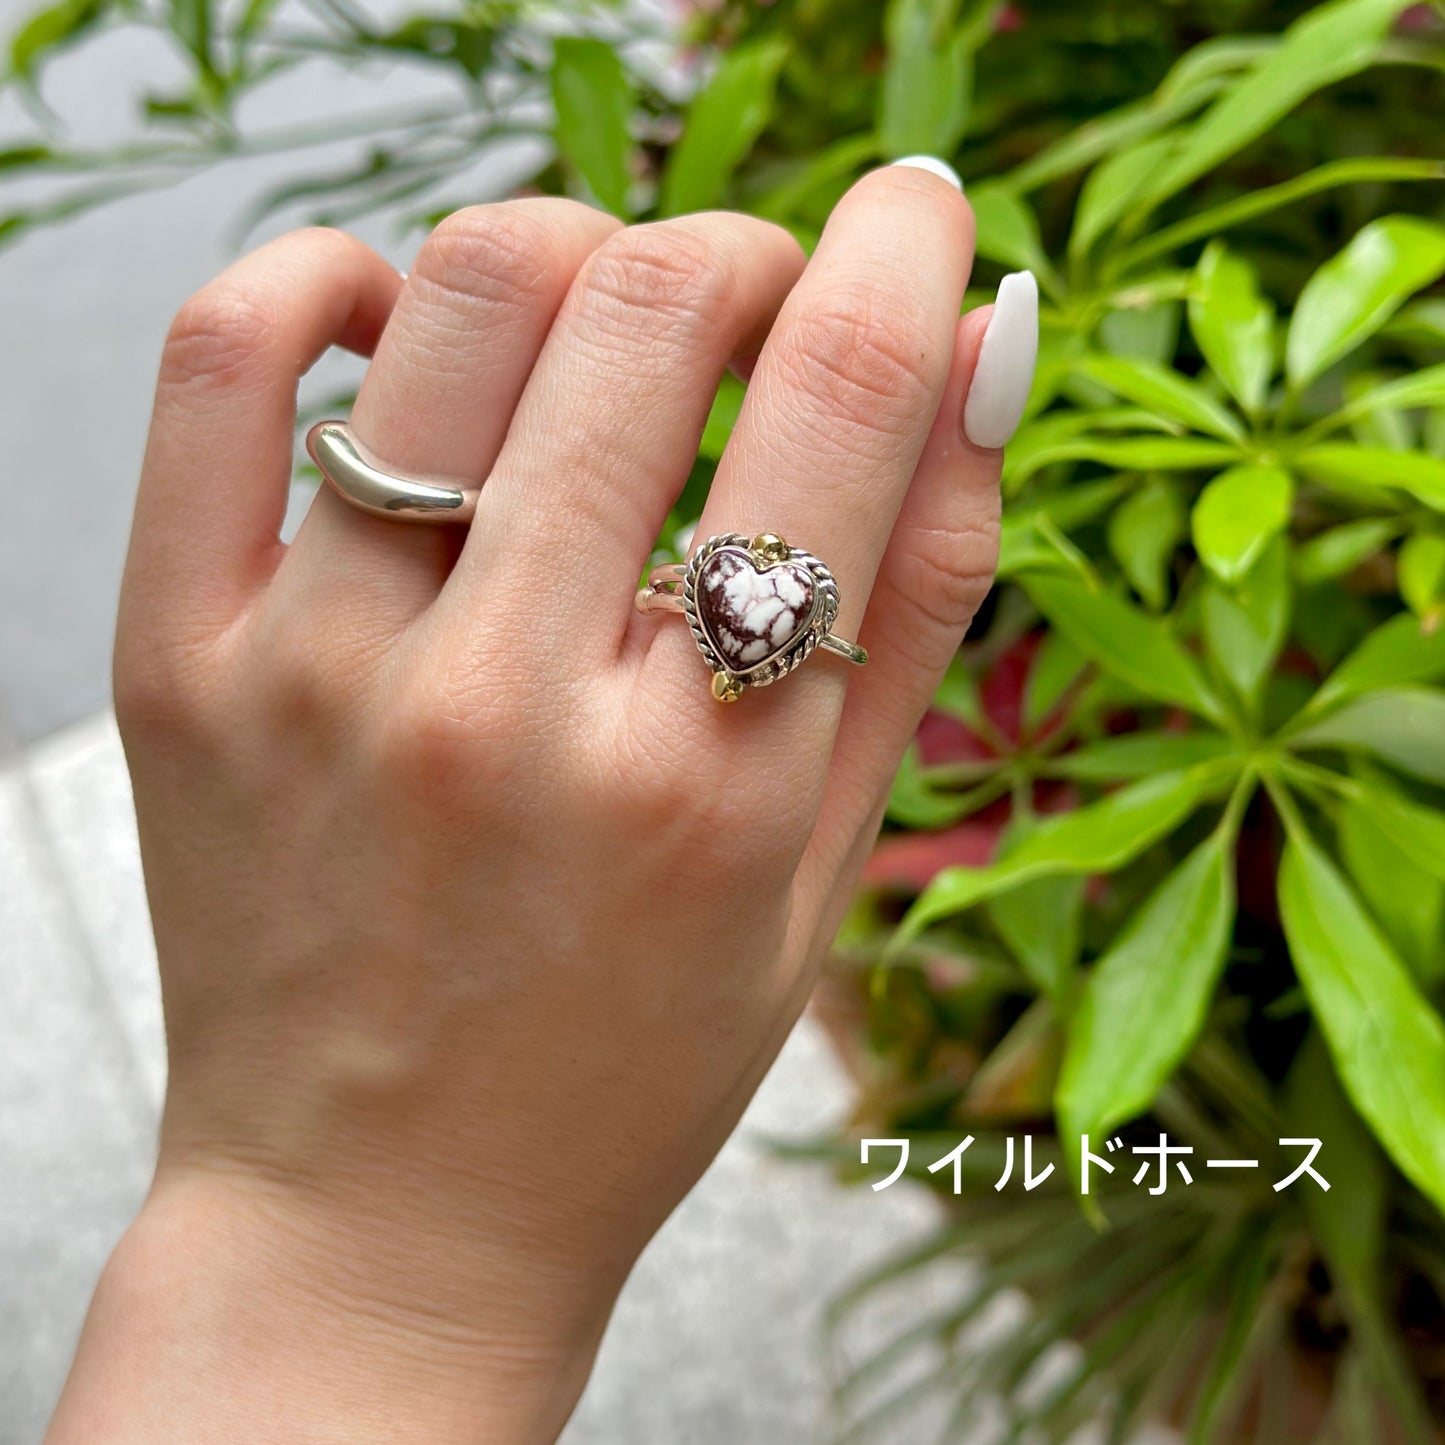 【オンライン先行】Heart ring 7